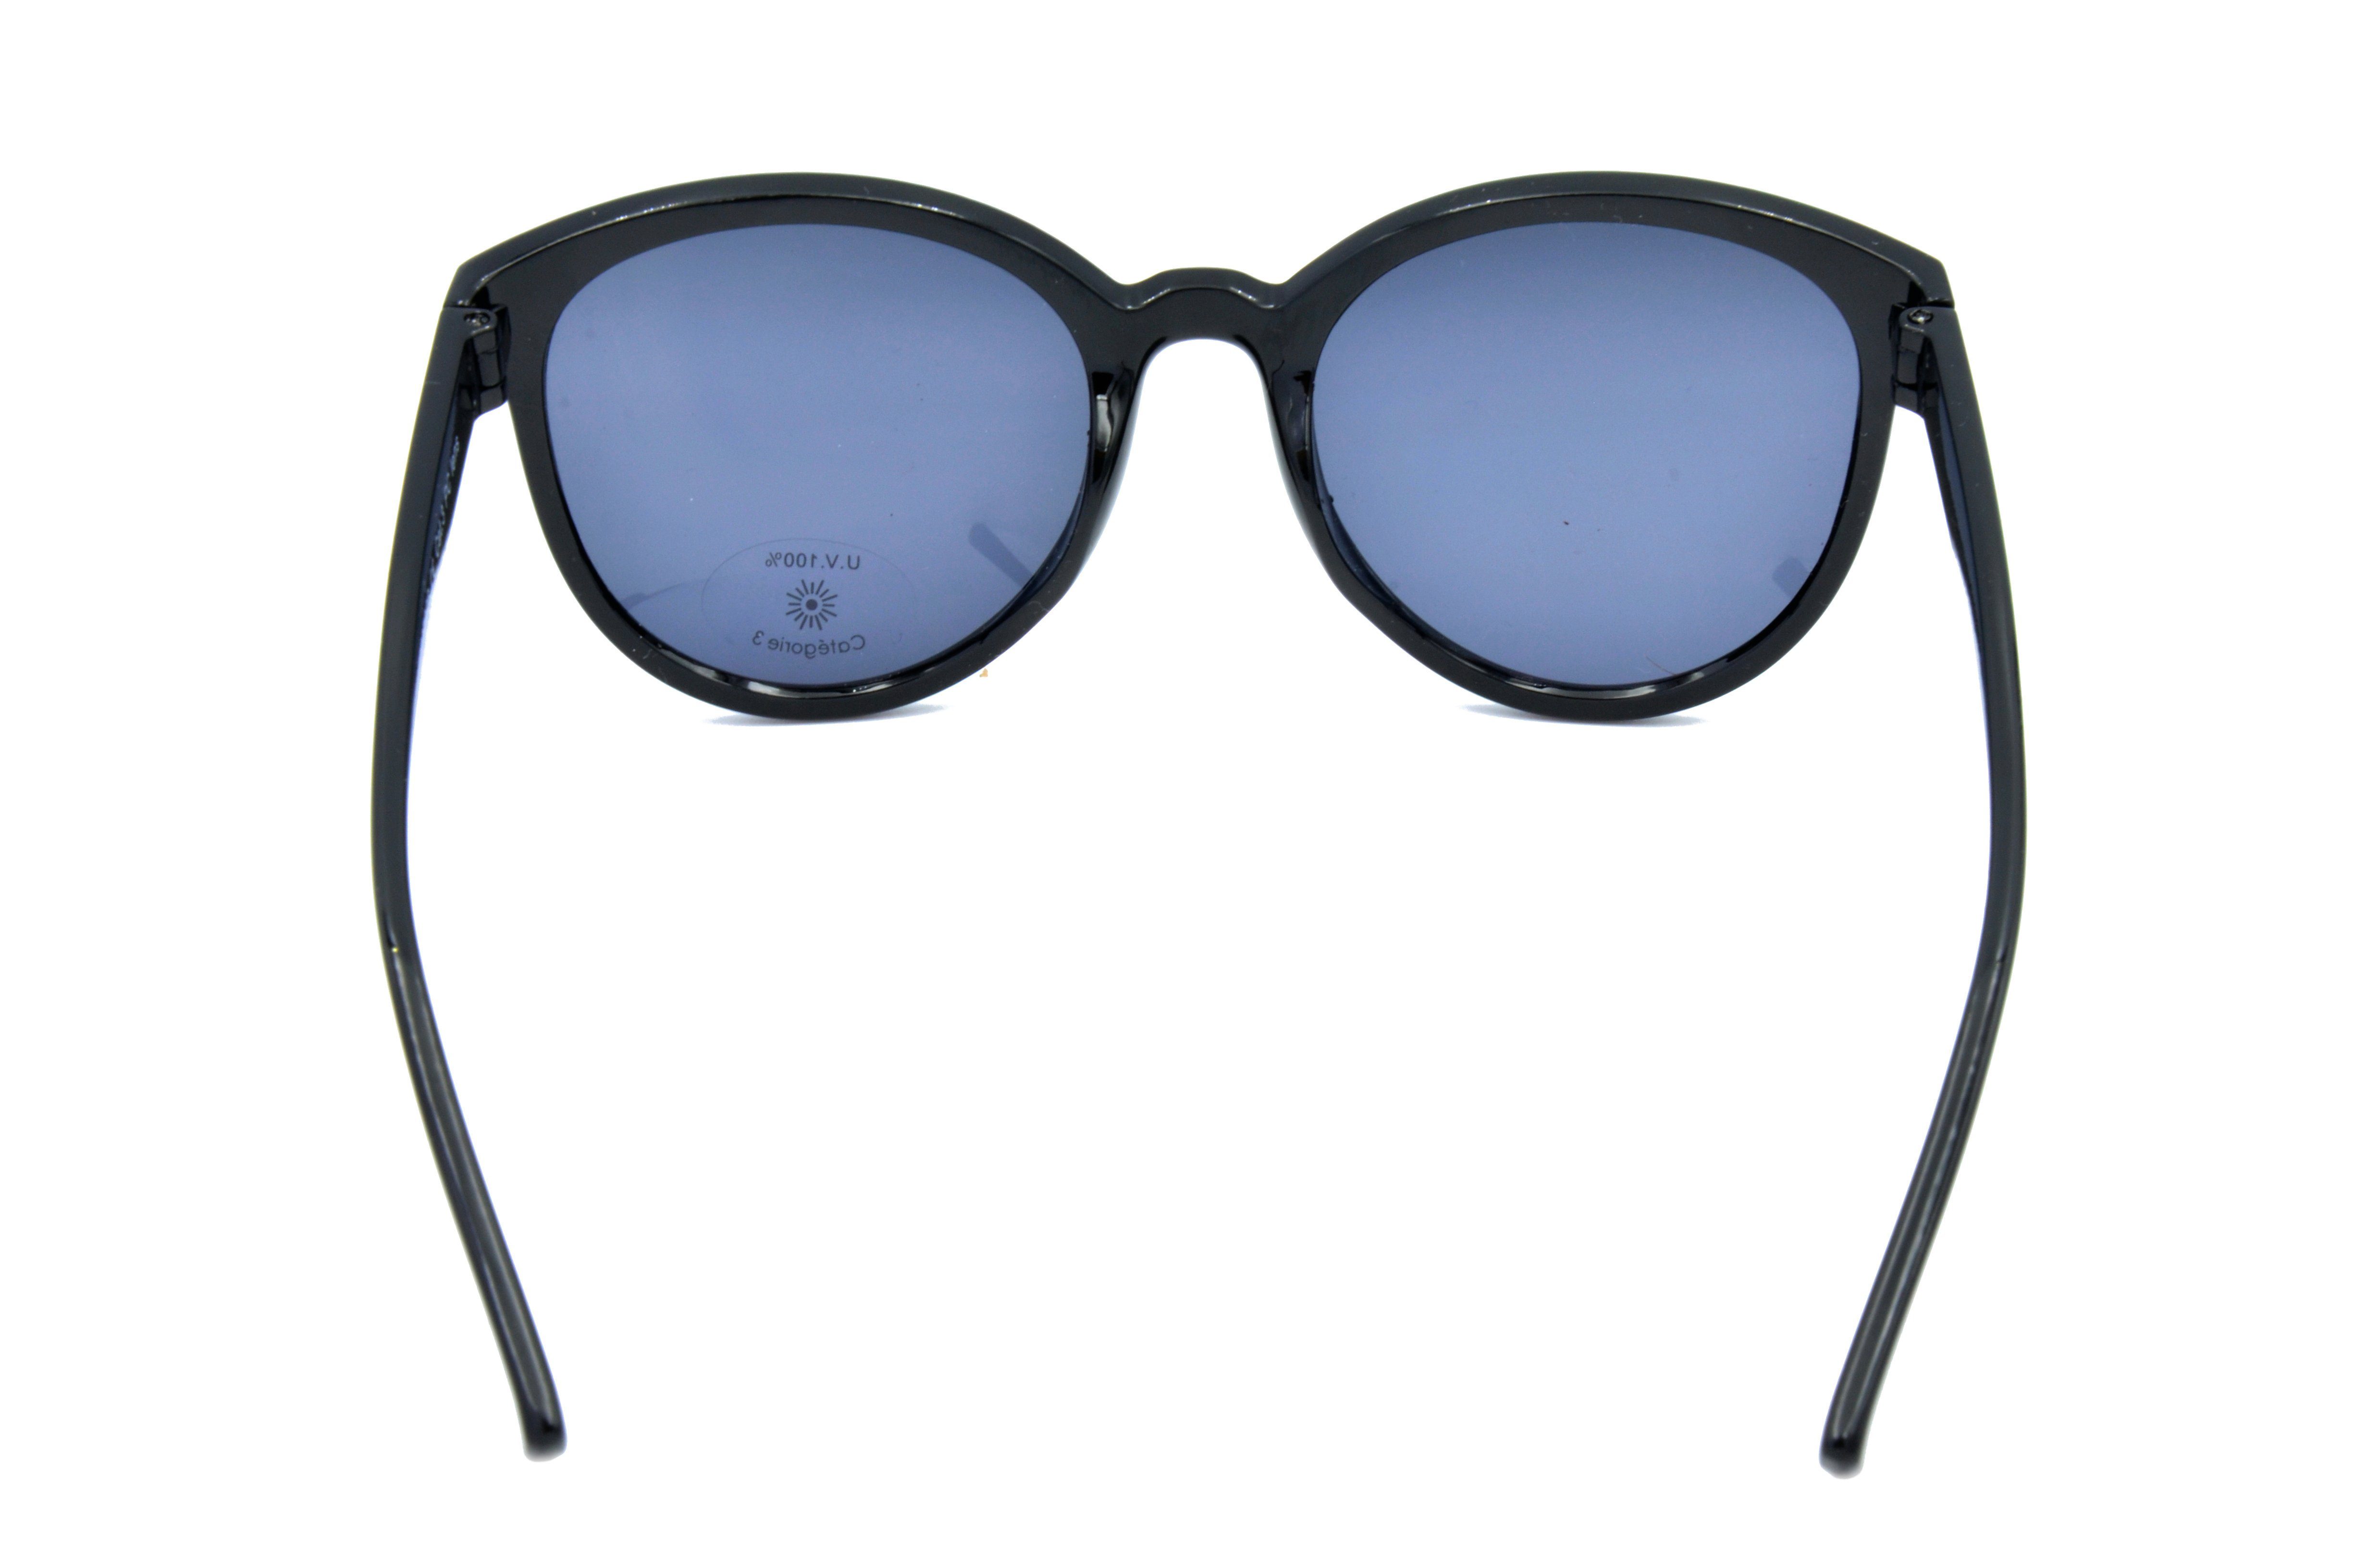 Sonnenbrille Gamswild schwarz "Pianolackoptik", Mode WM7026 GAMSSTYLE Damen Brille